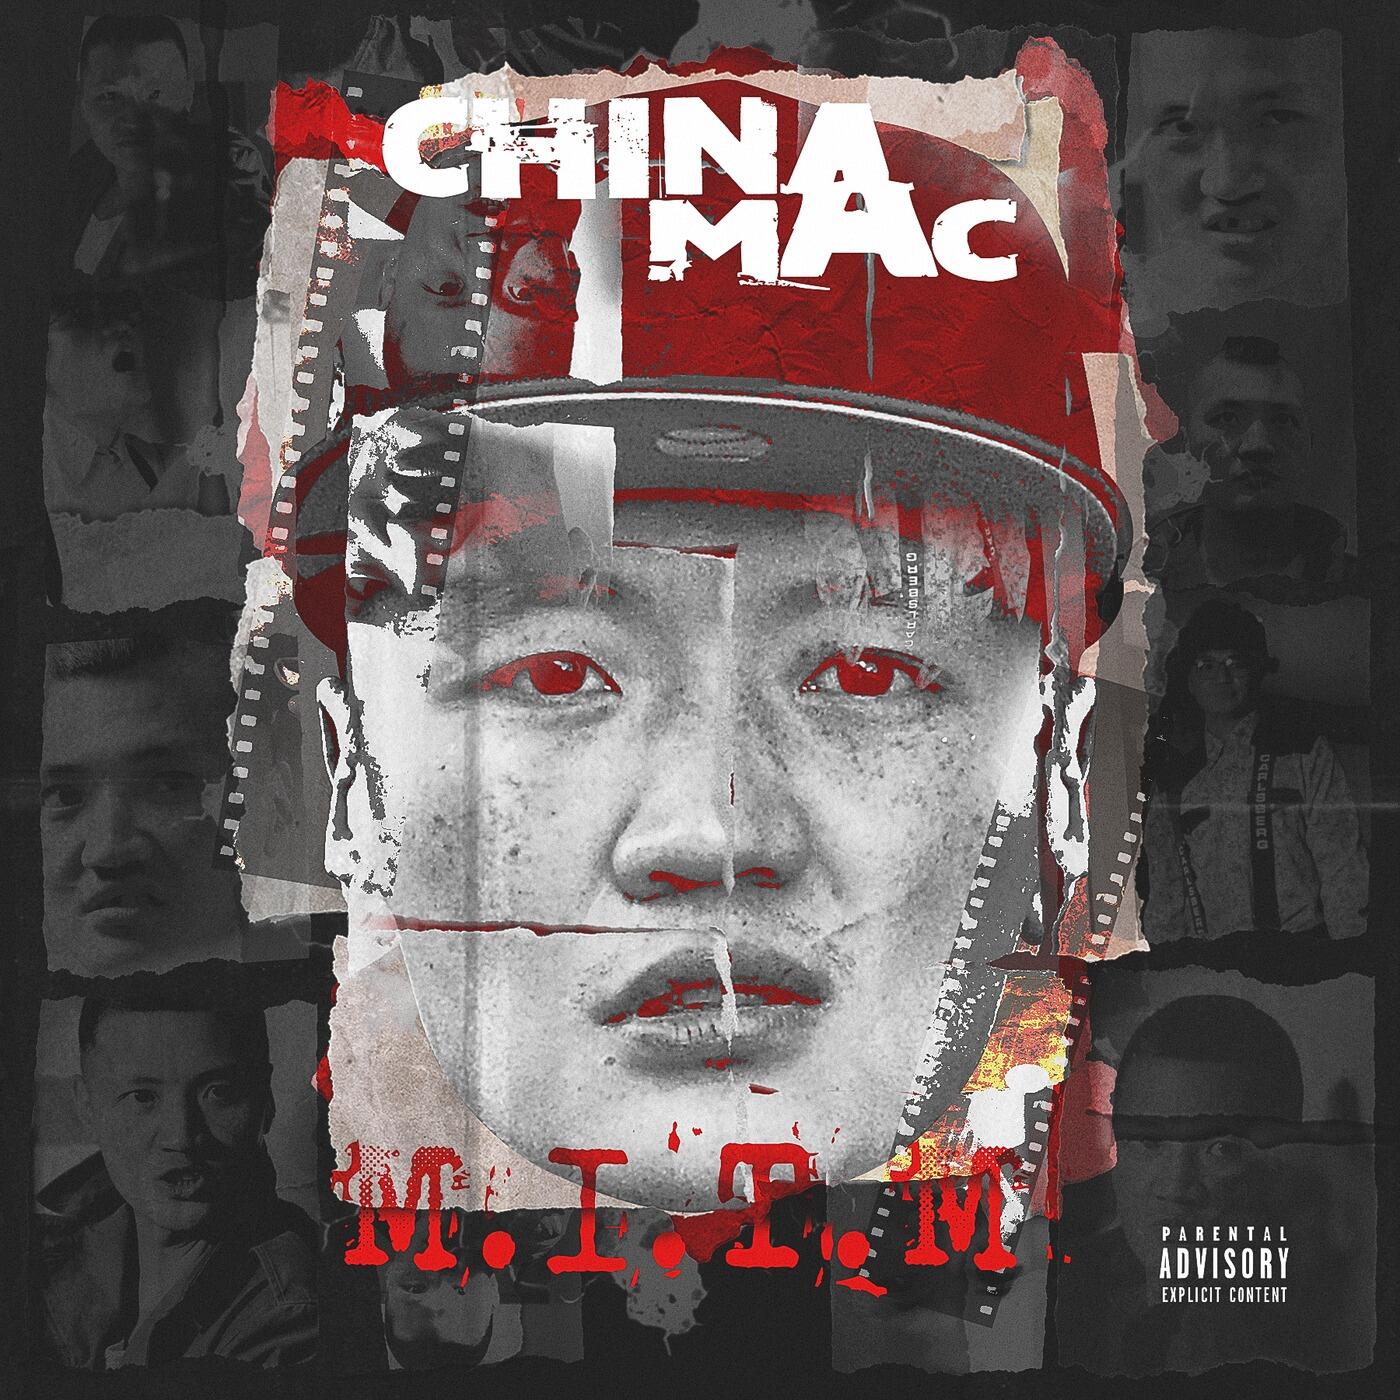 china mac mac talk free download